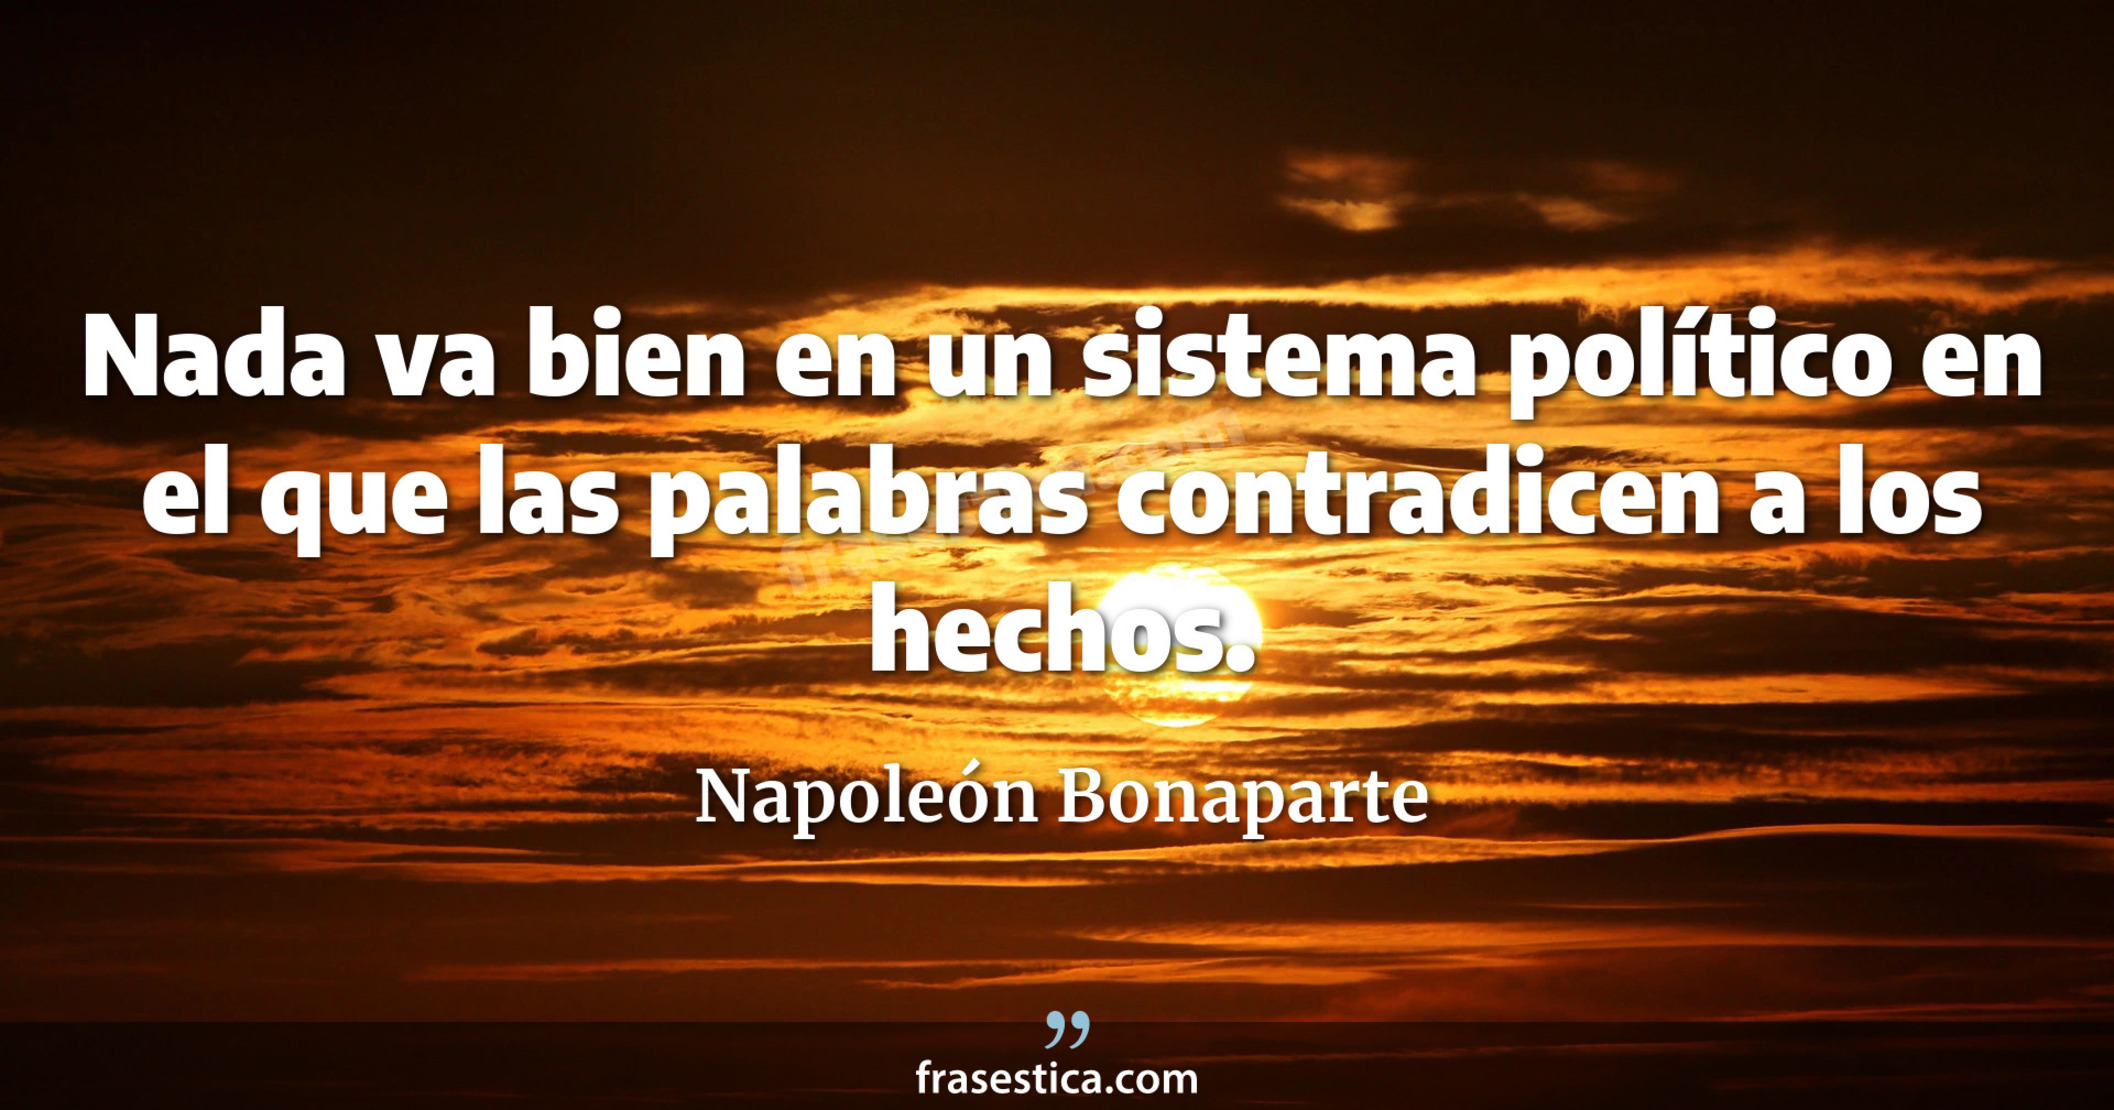 Nada va bien en un sistema político en el que las palabras contradicen a los hechos. - Napoleón Bonaparte